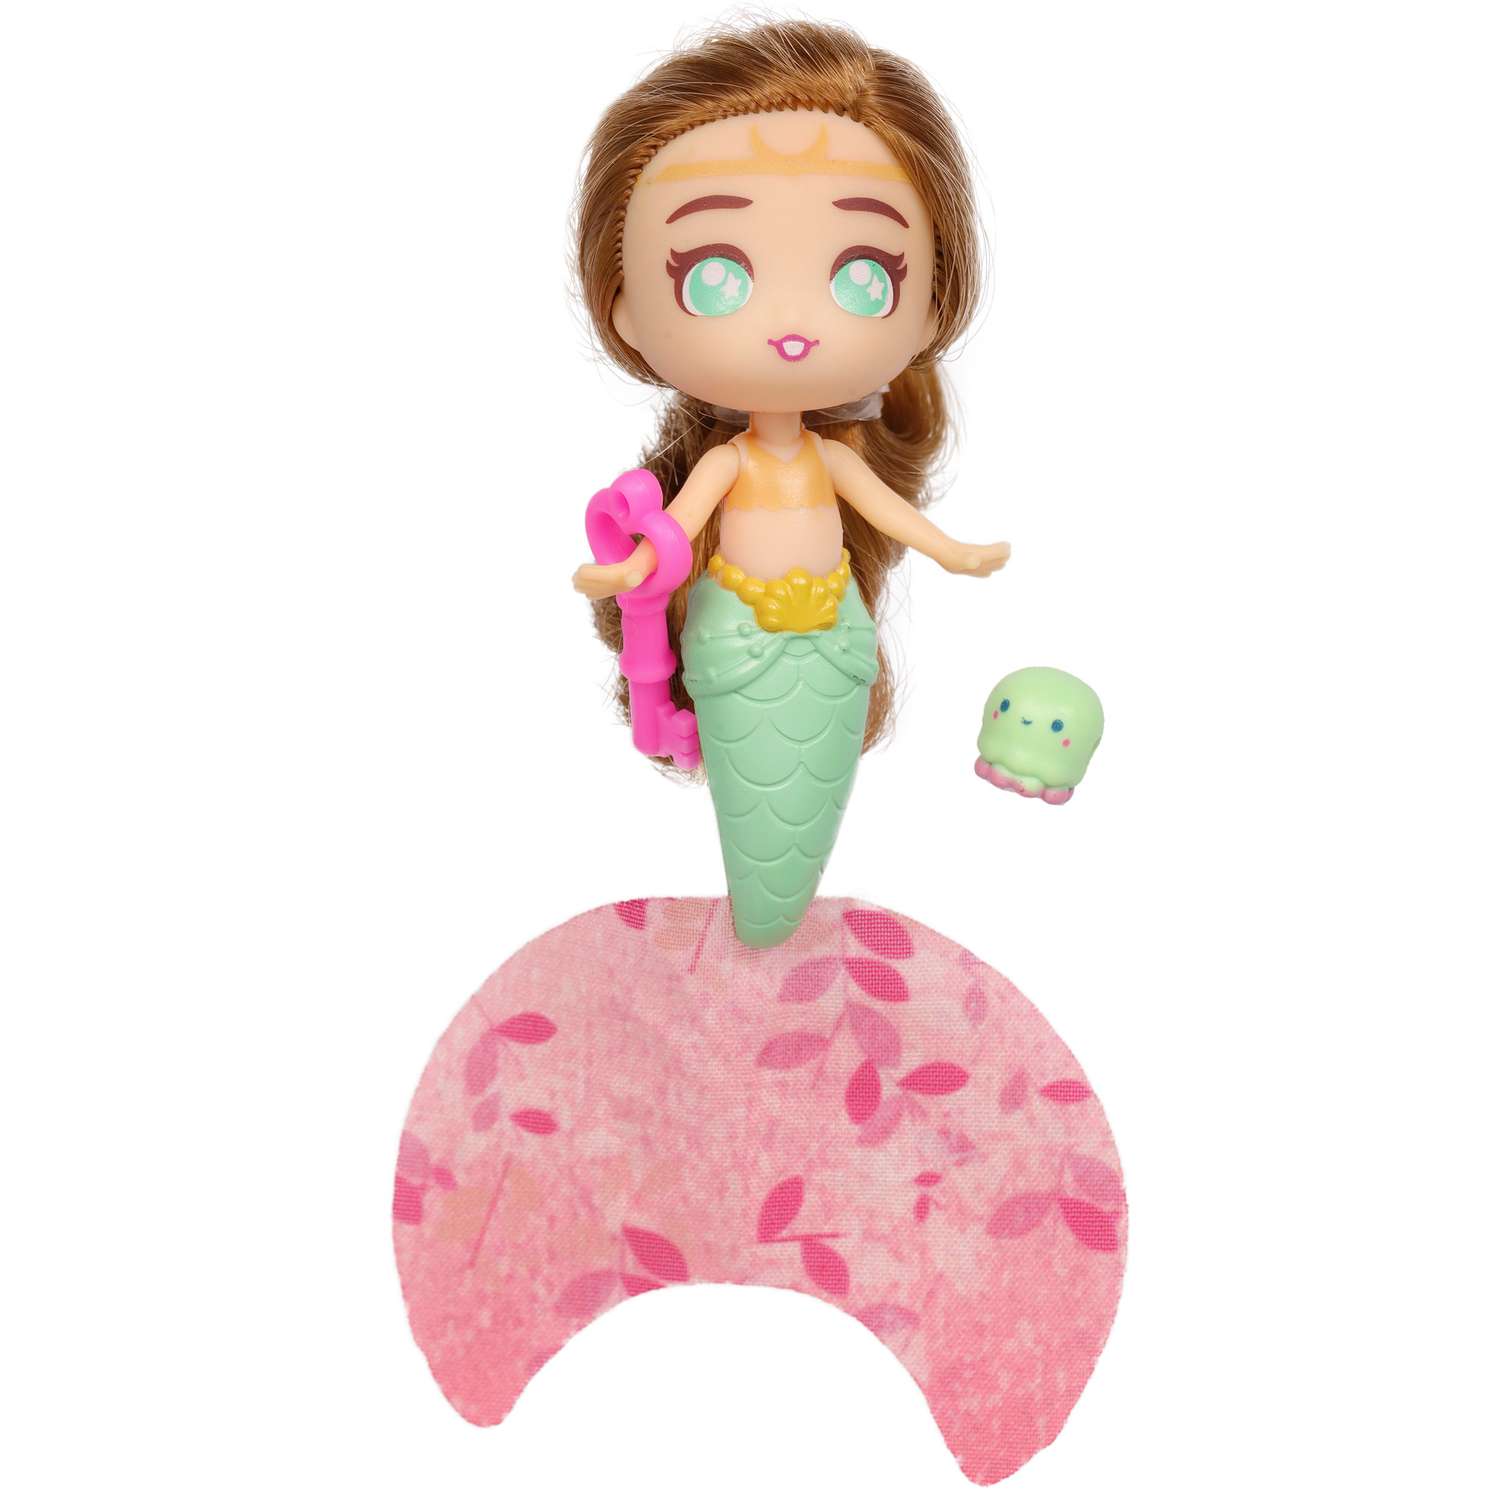 Кукла-сюрприз SEASTERS СиСтерс Принцесса русалка Грейс набор с бассейном аксессуарами и питомцем EAT15800 - фото 10